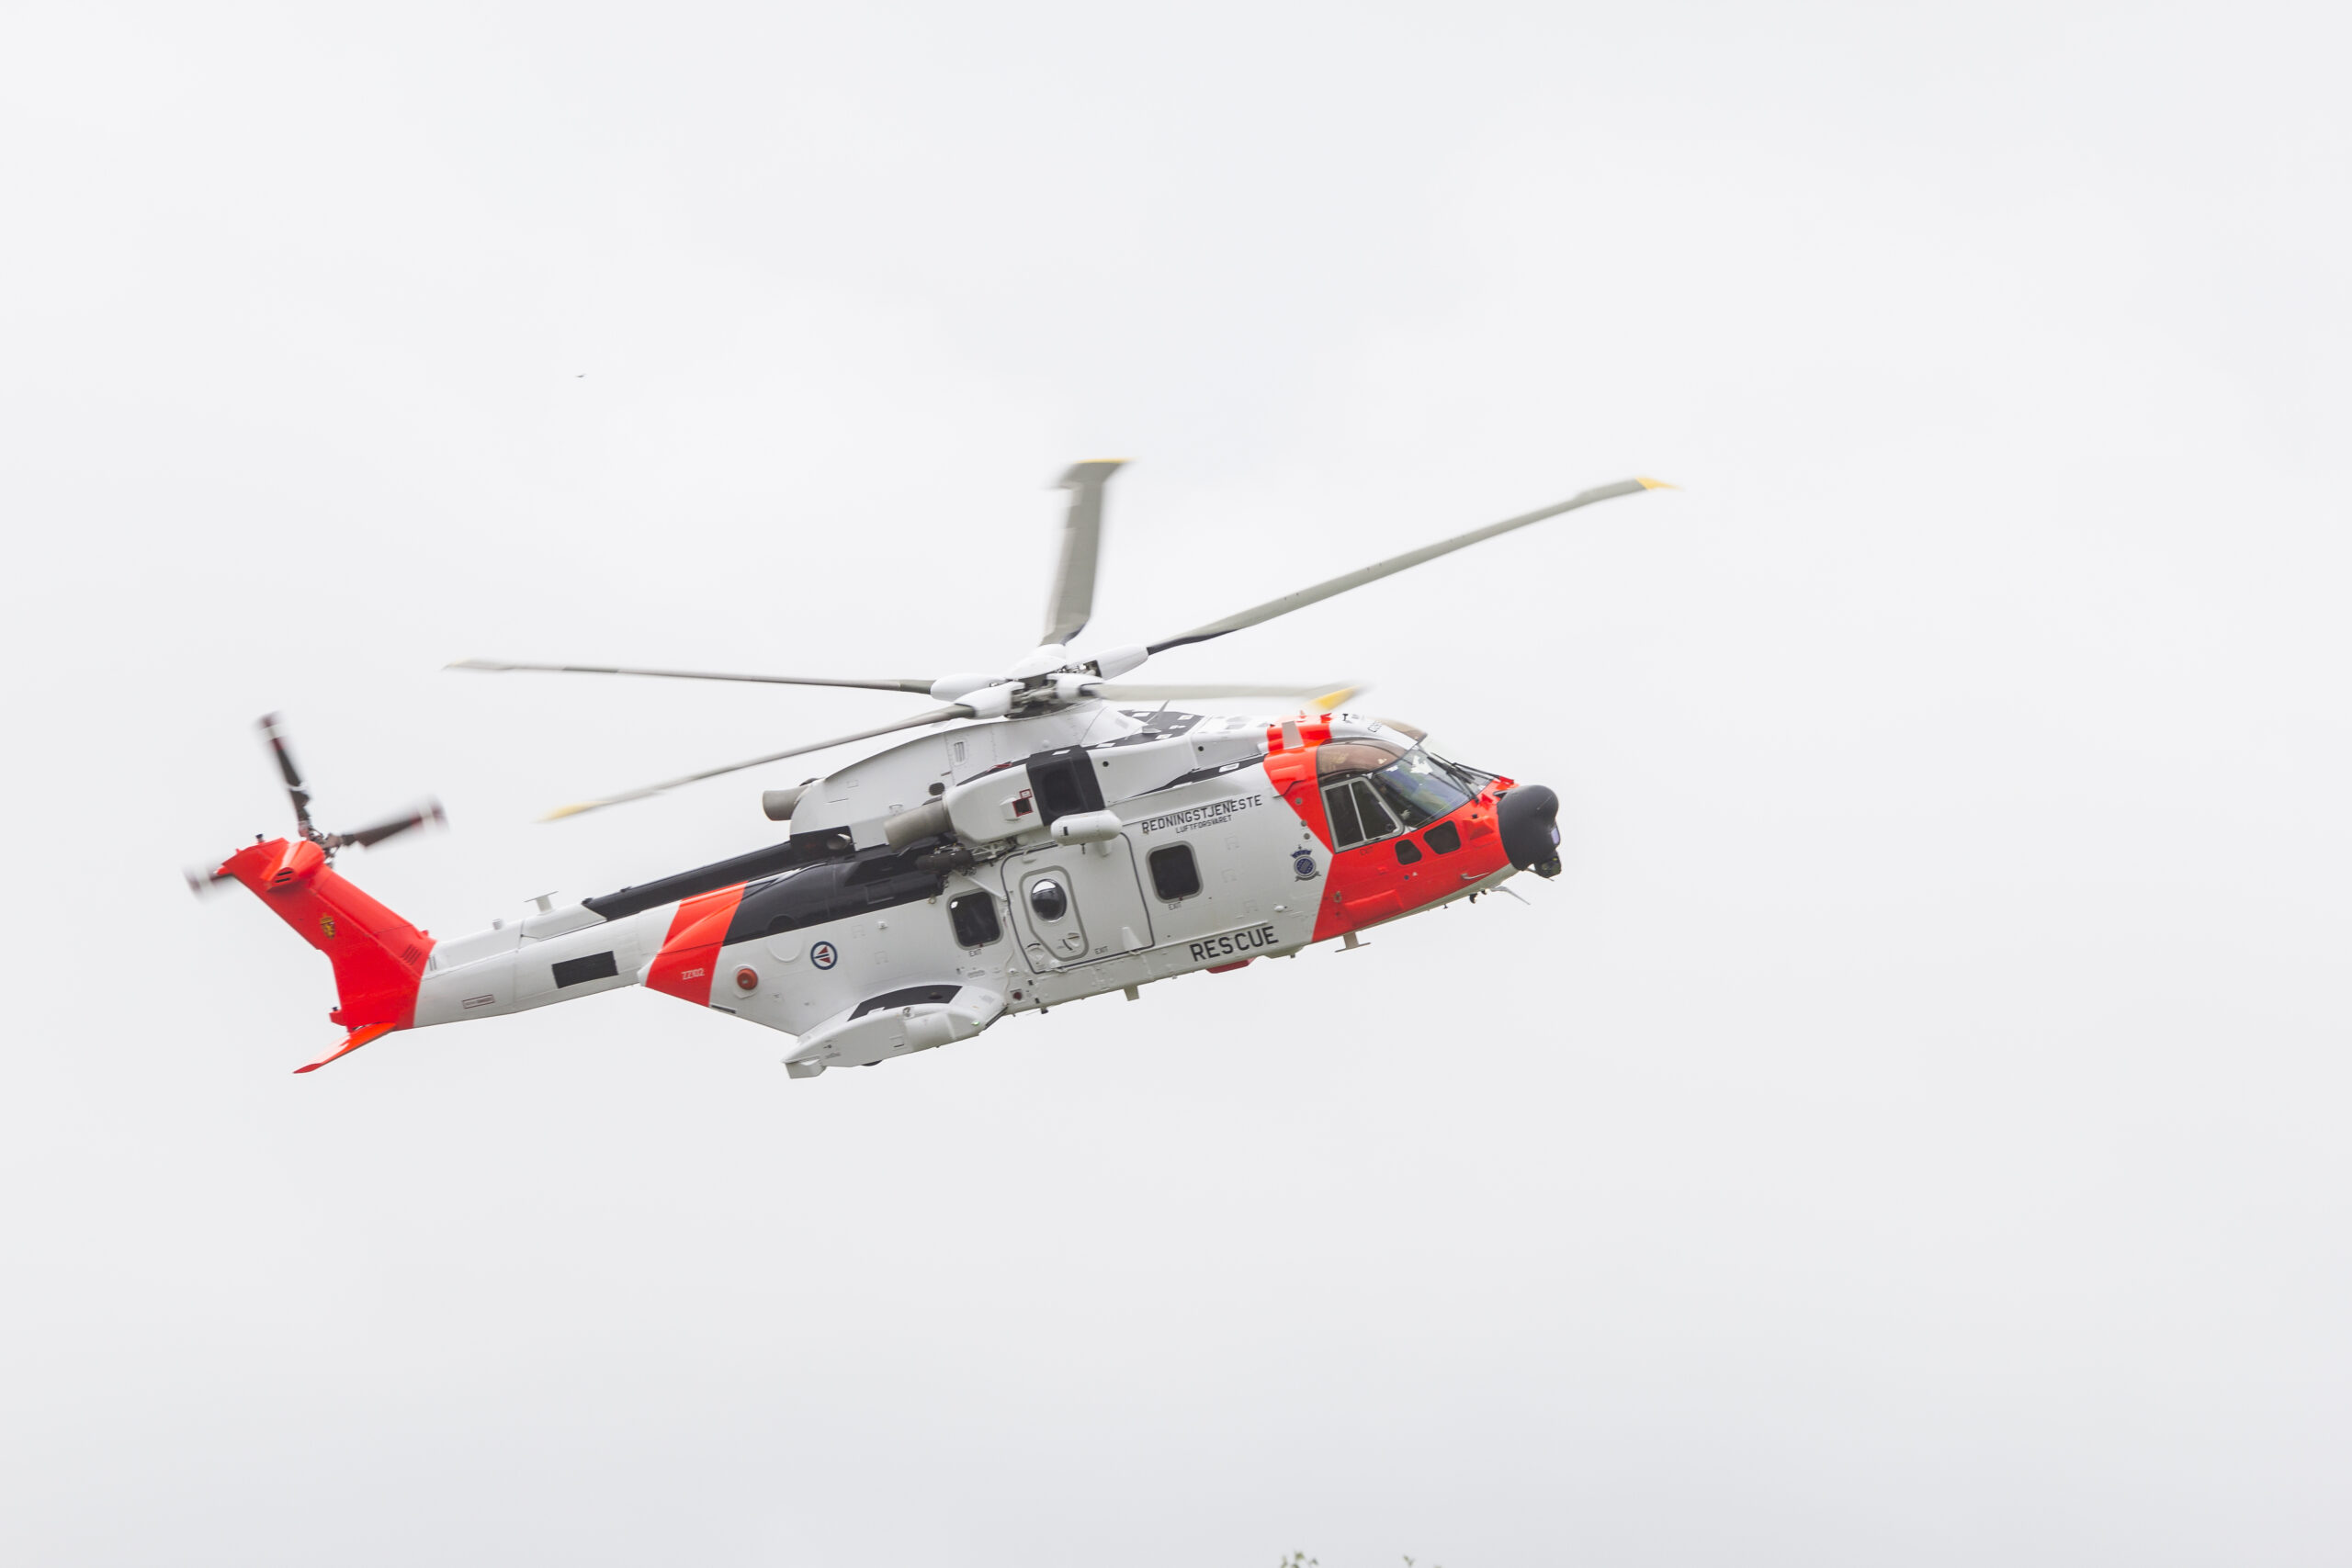 Leonardo Aw101 (bildet) skal overta Sea Kings rolle som nasjonalt redningshelikopter. Arkivfoto: Martin Mellquist, Forsvaret